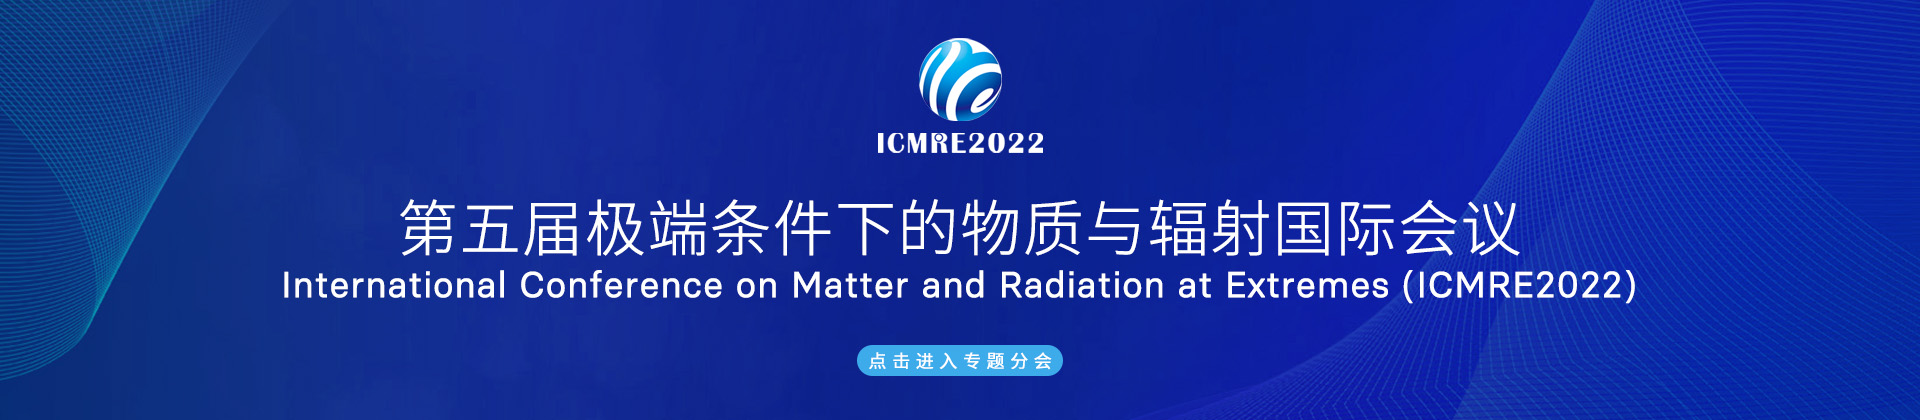 极端条件下的物质与辐射国际会议-PC banner.jpg